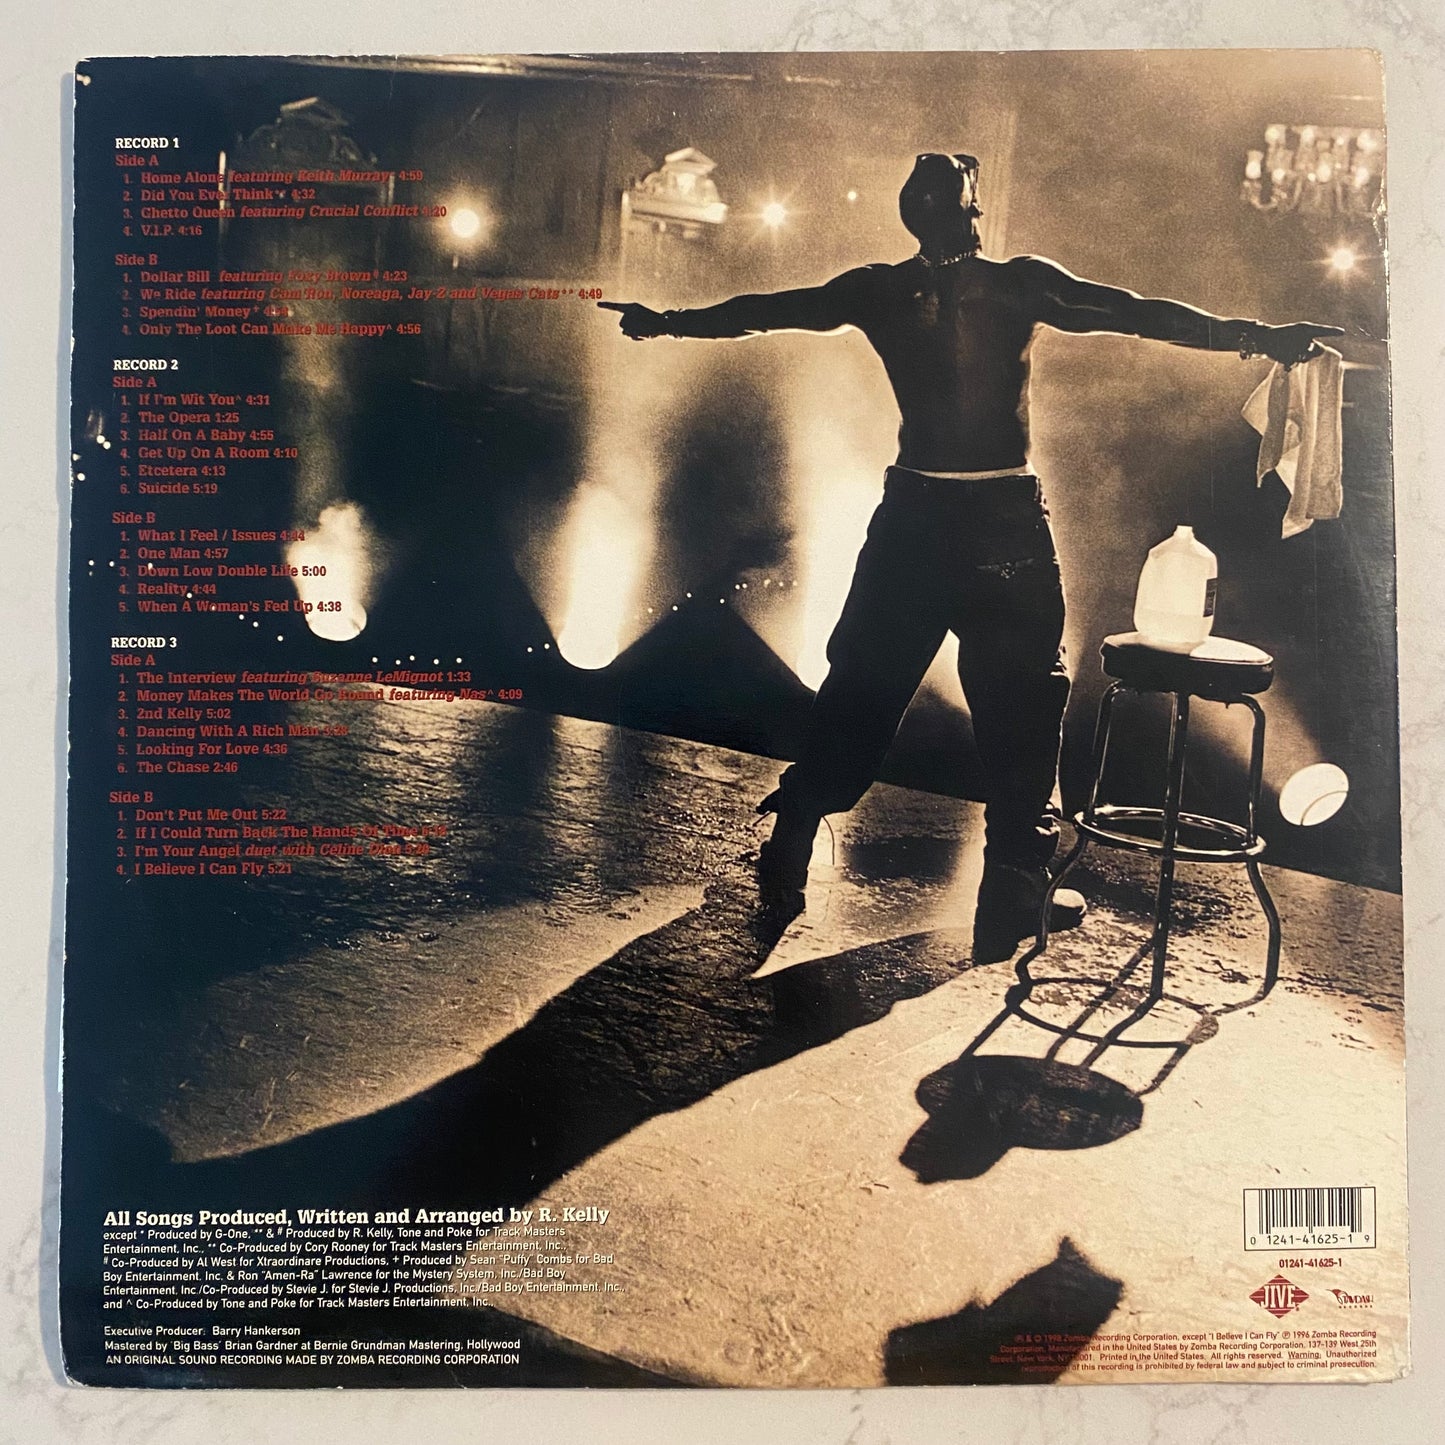 R. Kelly - R. (3xLP, Album, Gat)